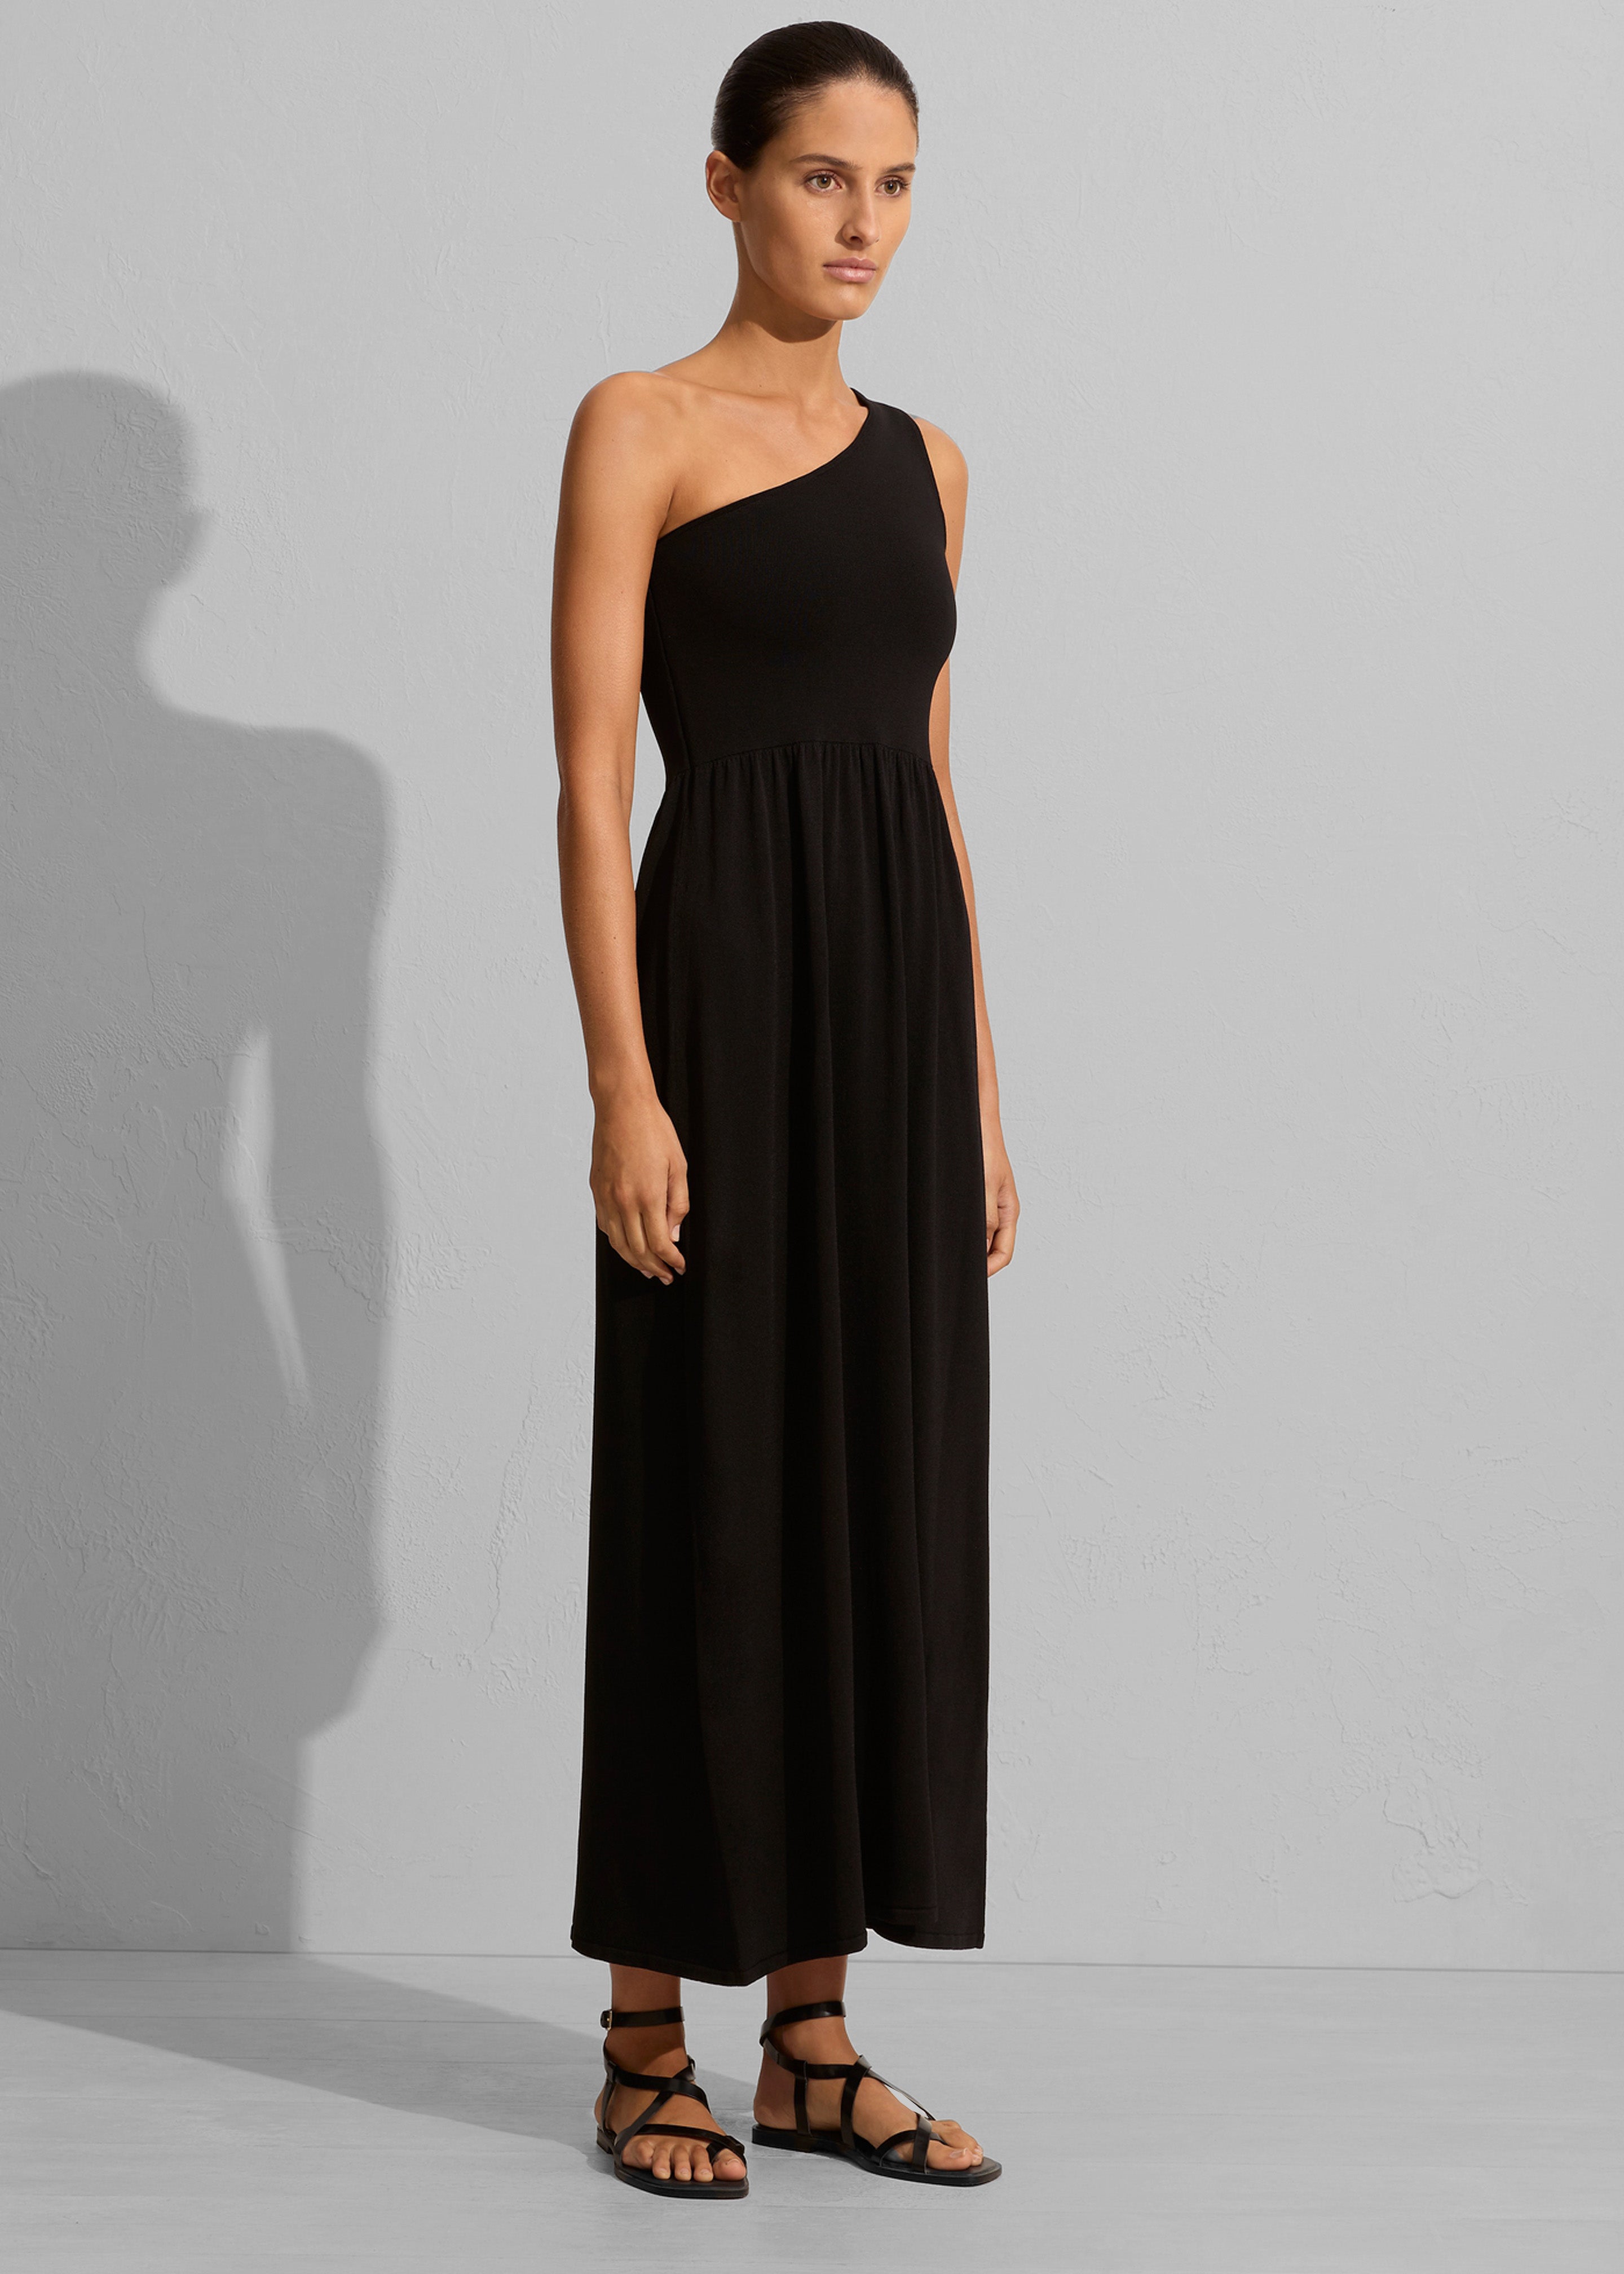 Matteau Asymmetric Knit Dress - Black - 1